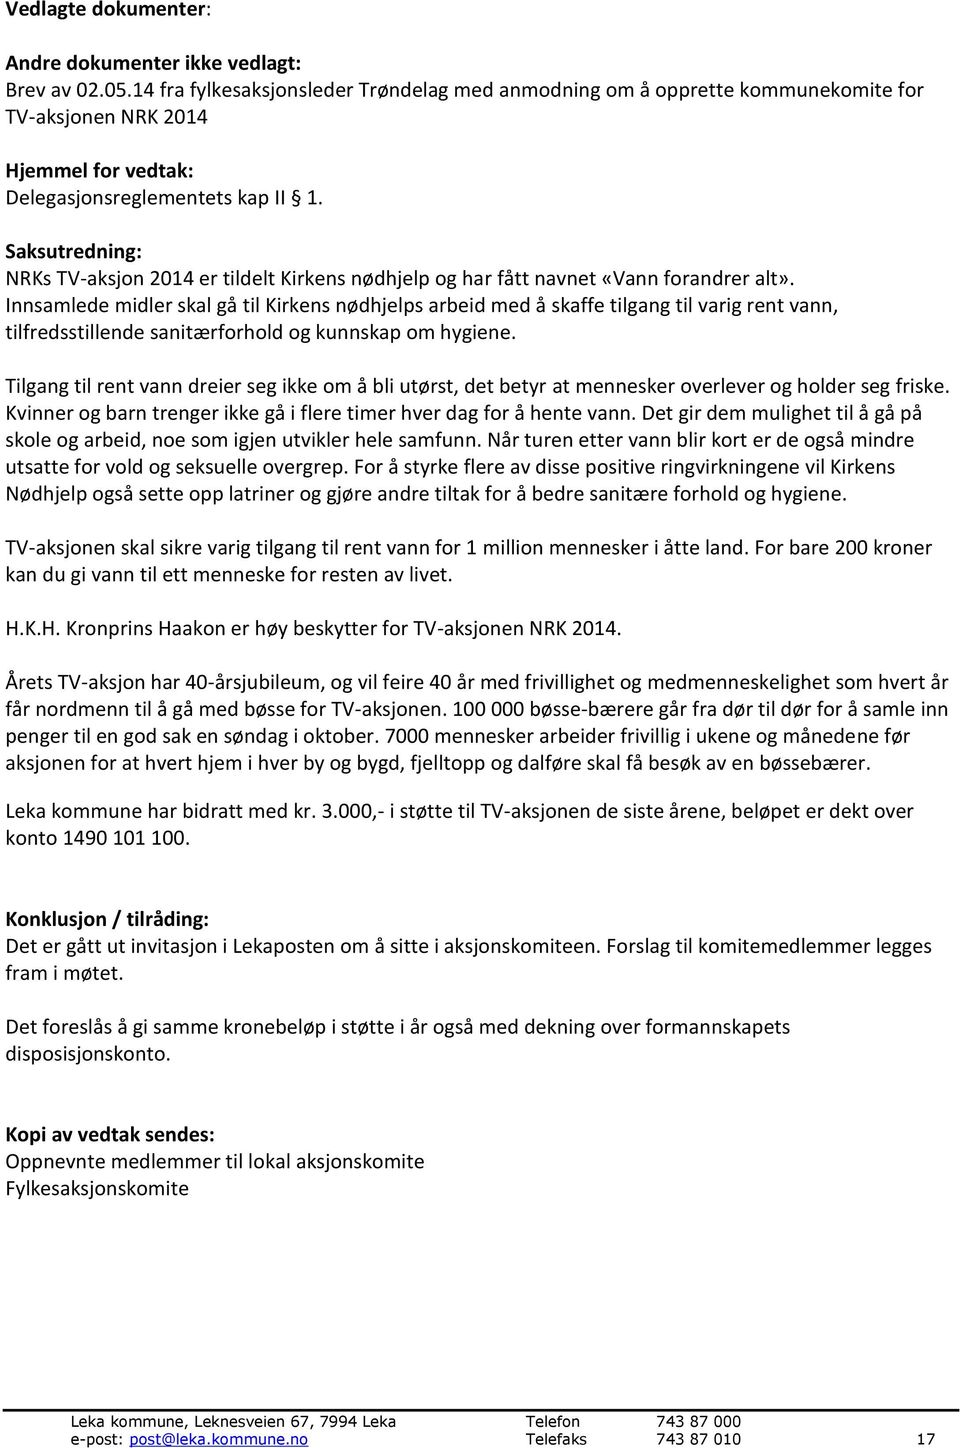 Saksutredning: NRKs TV-aksjon 2014 er tildelt Kirkens nødhjelp og har fått navnet «Vann forandrer alt».